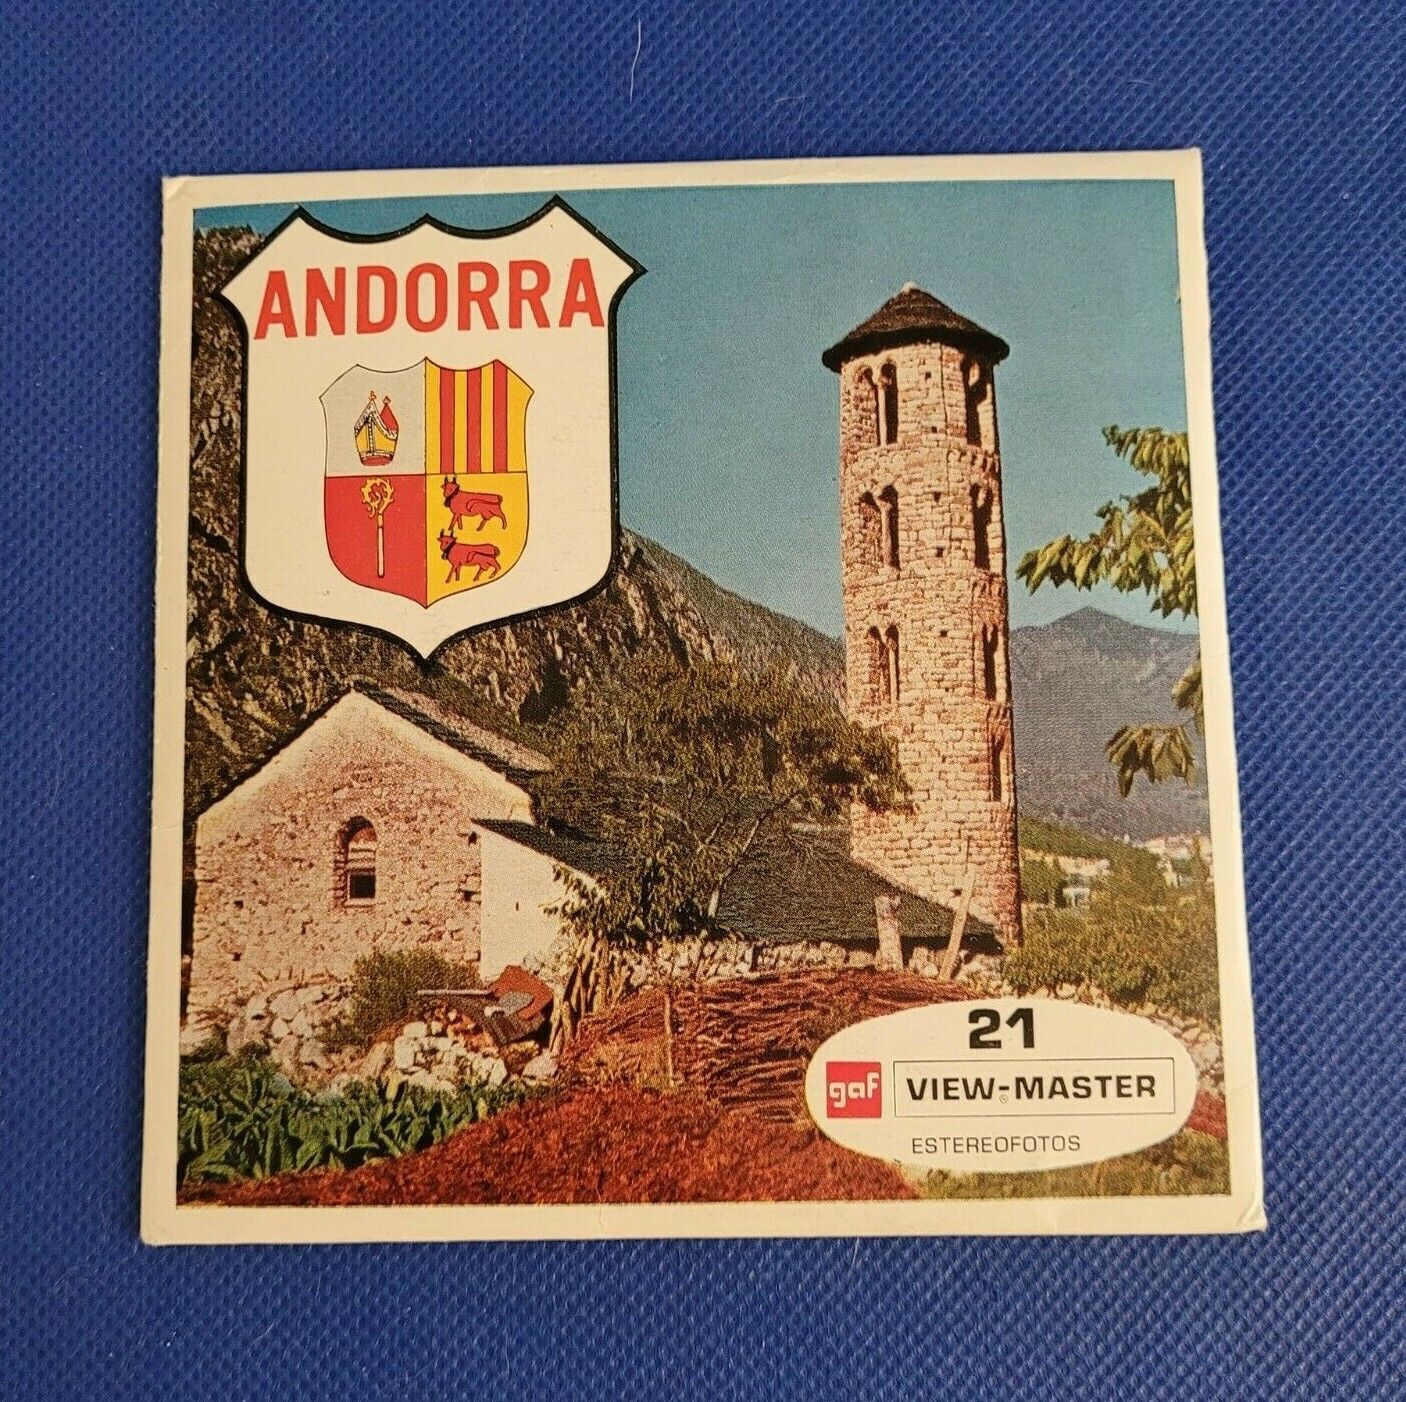 Vintage Gaf C235 S Andorra view-master Minty Reels 3 Reel Set Spanish